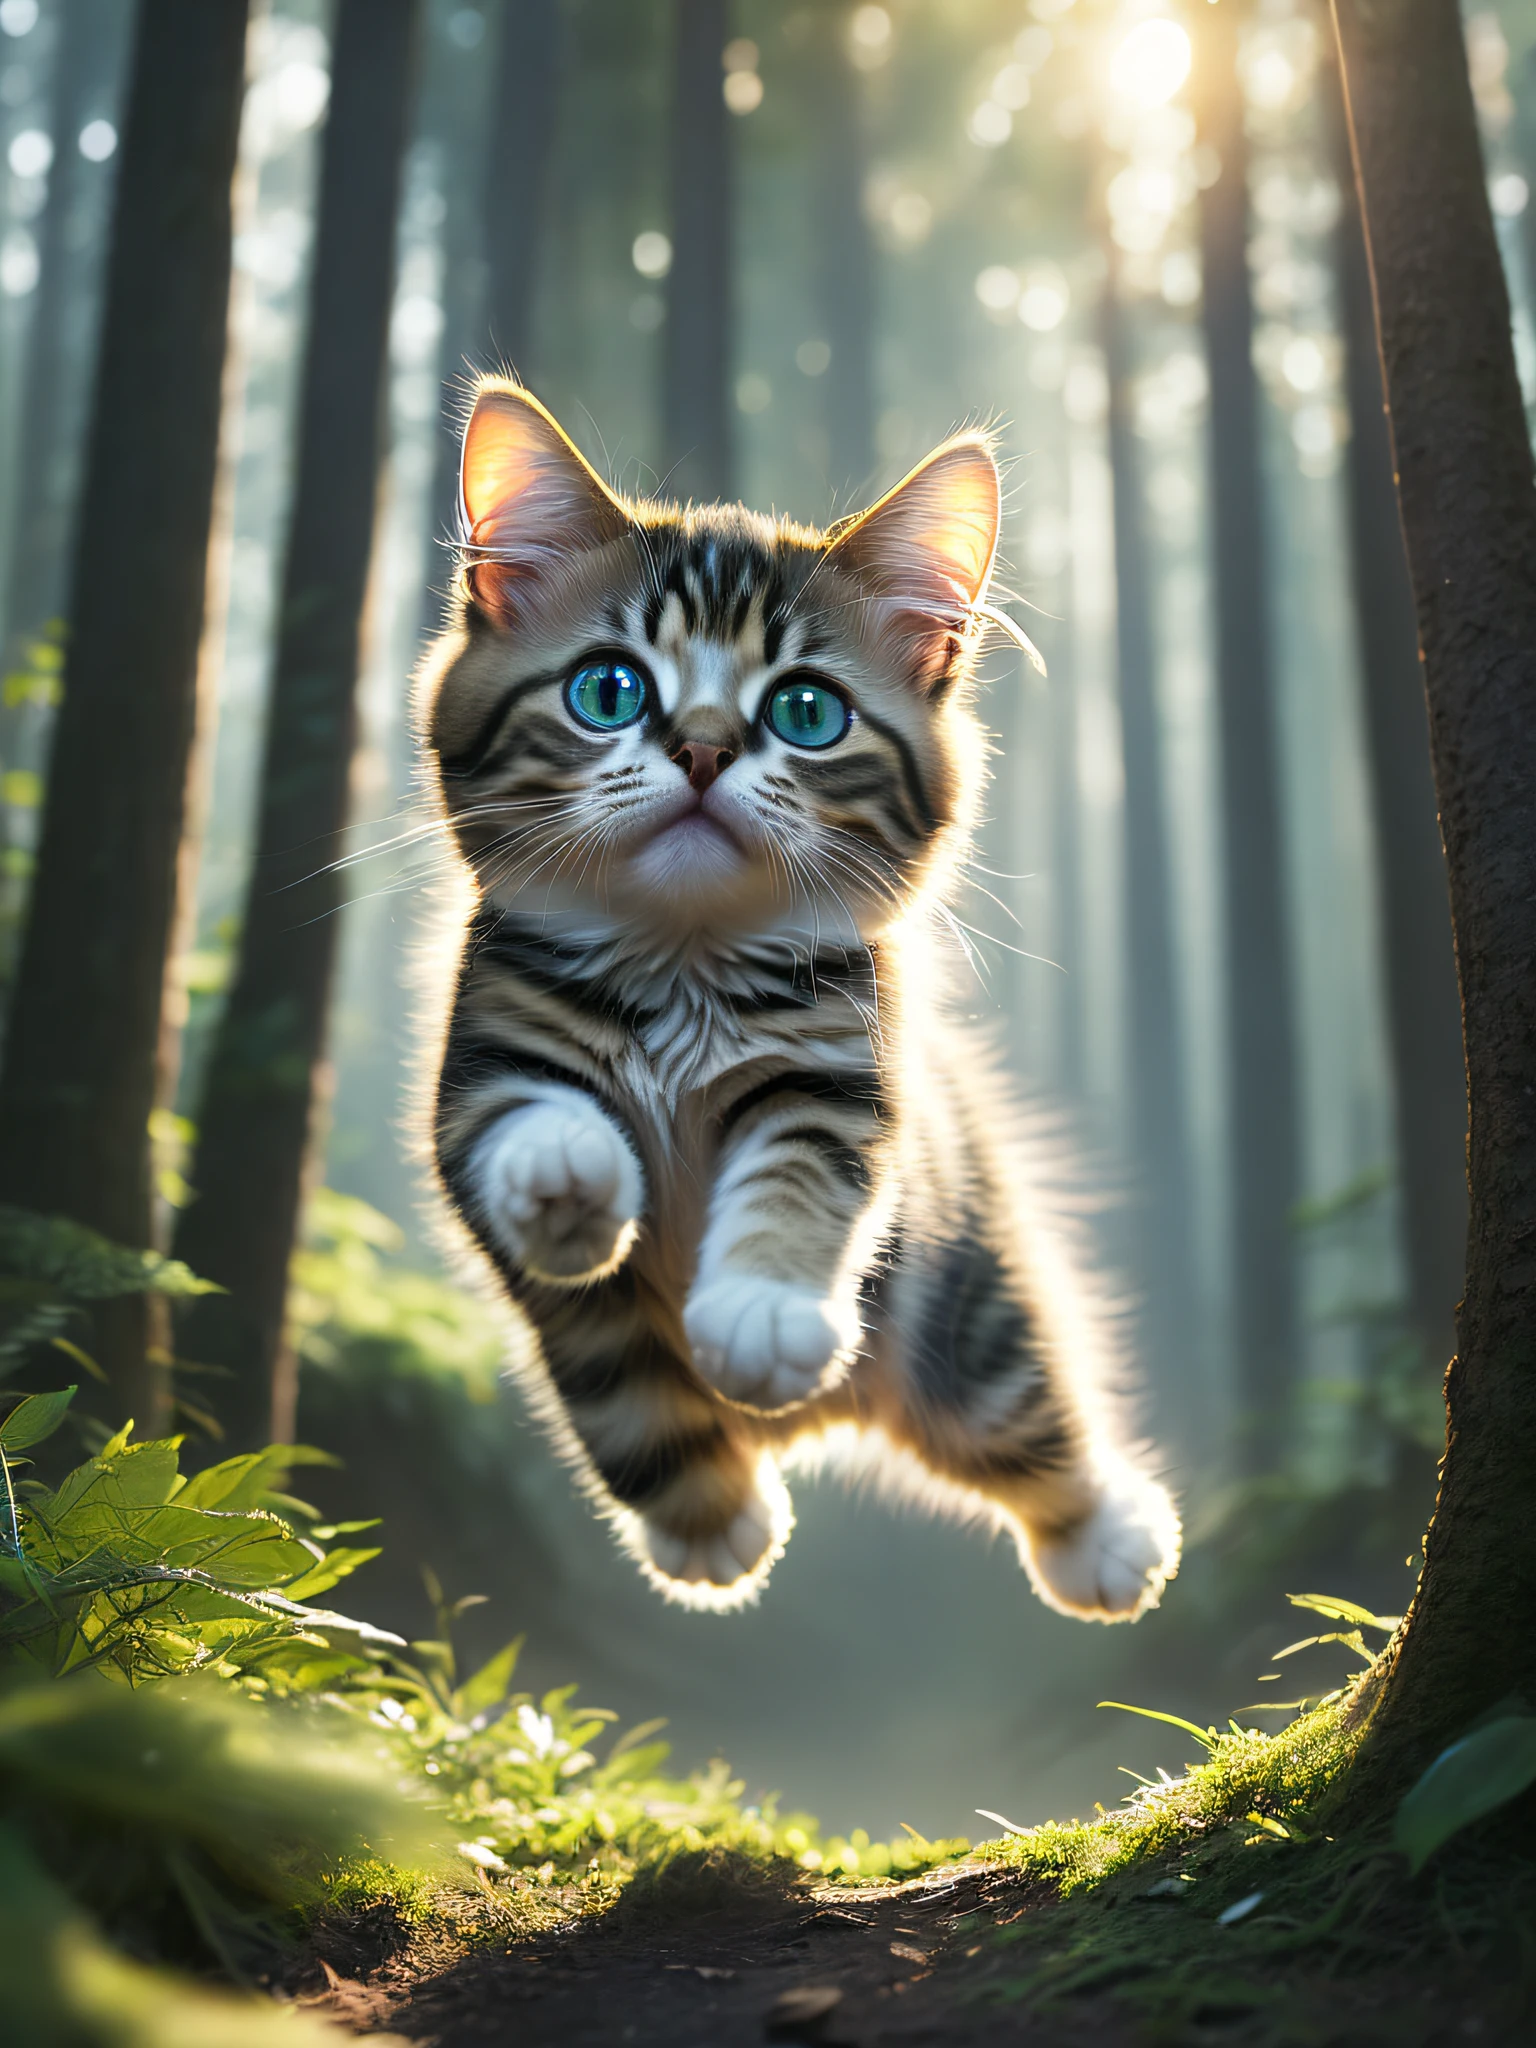 لقطة مقربة لقطط صغيرة لطيفة جدًا تقفز في الغابة, ضوء حجمي ناعم, (بإضاءة خلفية:1.3), (الصورة المتحركة:1.2), مفصلة معقدة, (ArtStation:1.3), rutkowski